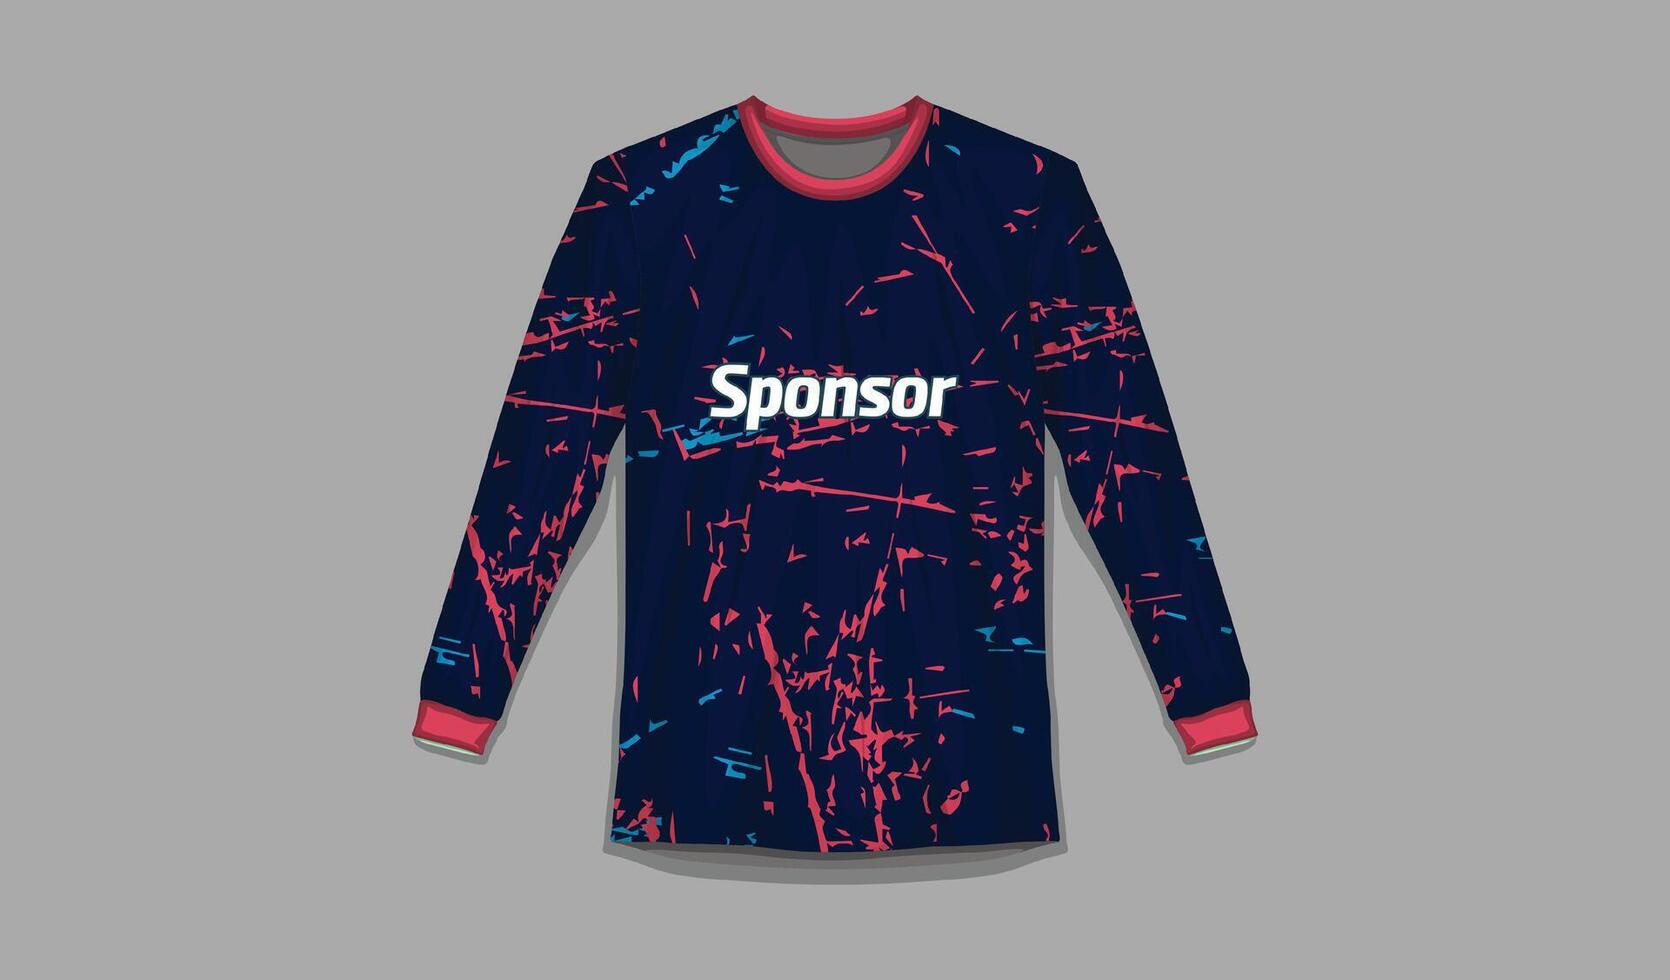 sport- overhemd ontwerp klaar naar afdrukken Amerikaans voetbal overhemd voor sublimatie vector